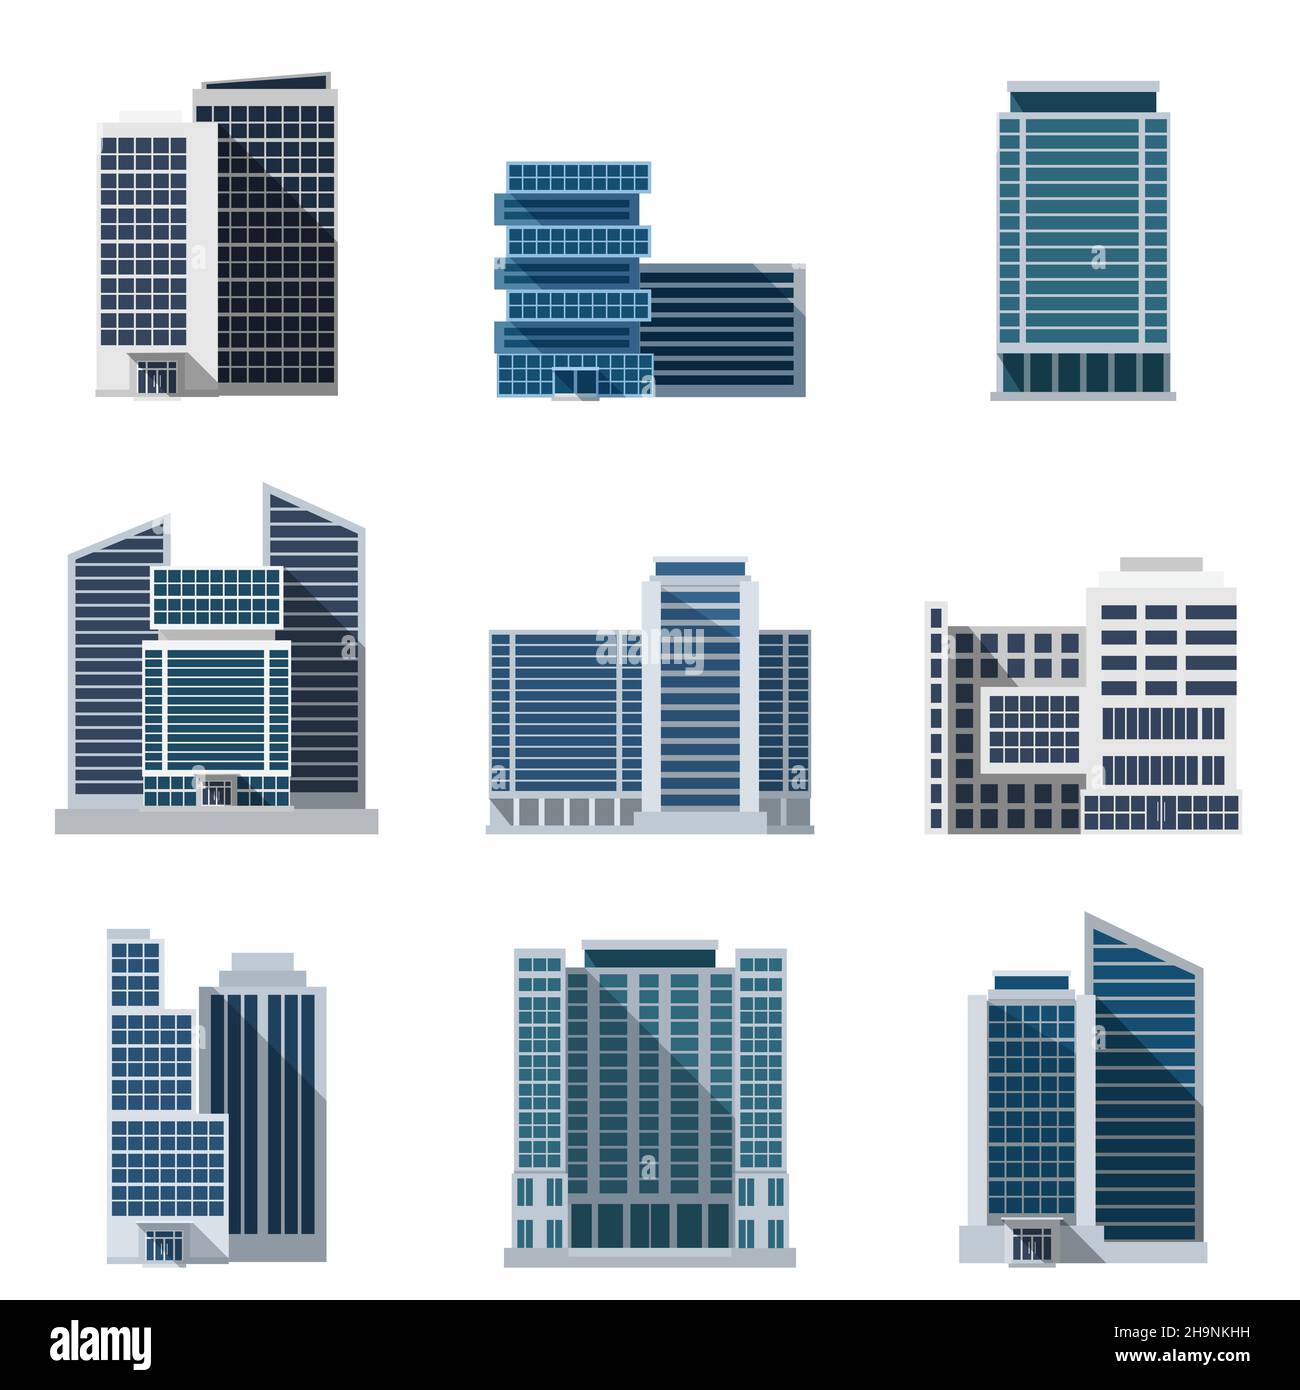 Les immeubles de bureaux et les centres d'affaires sont des icônes plates qui définissent un vecteur isolé illustration Illustration de Vecteur